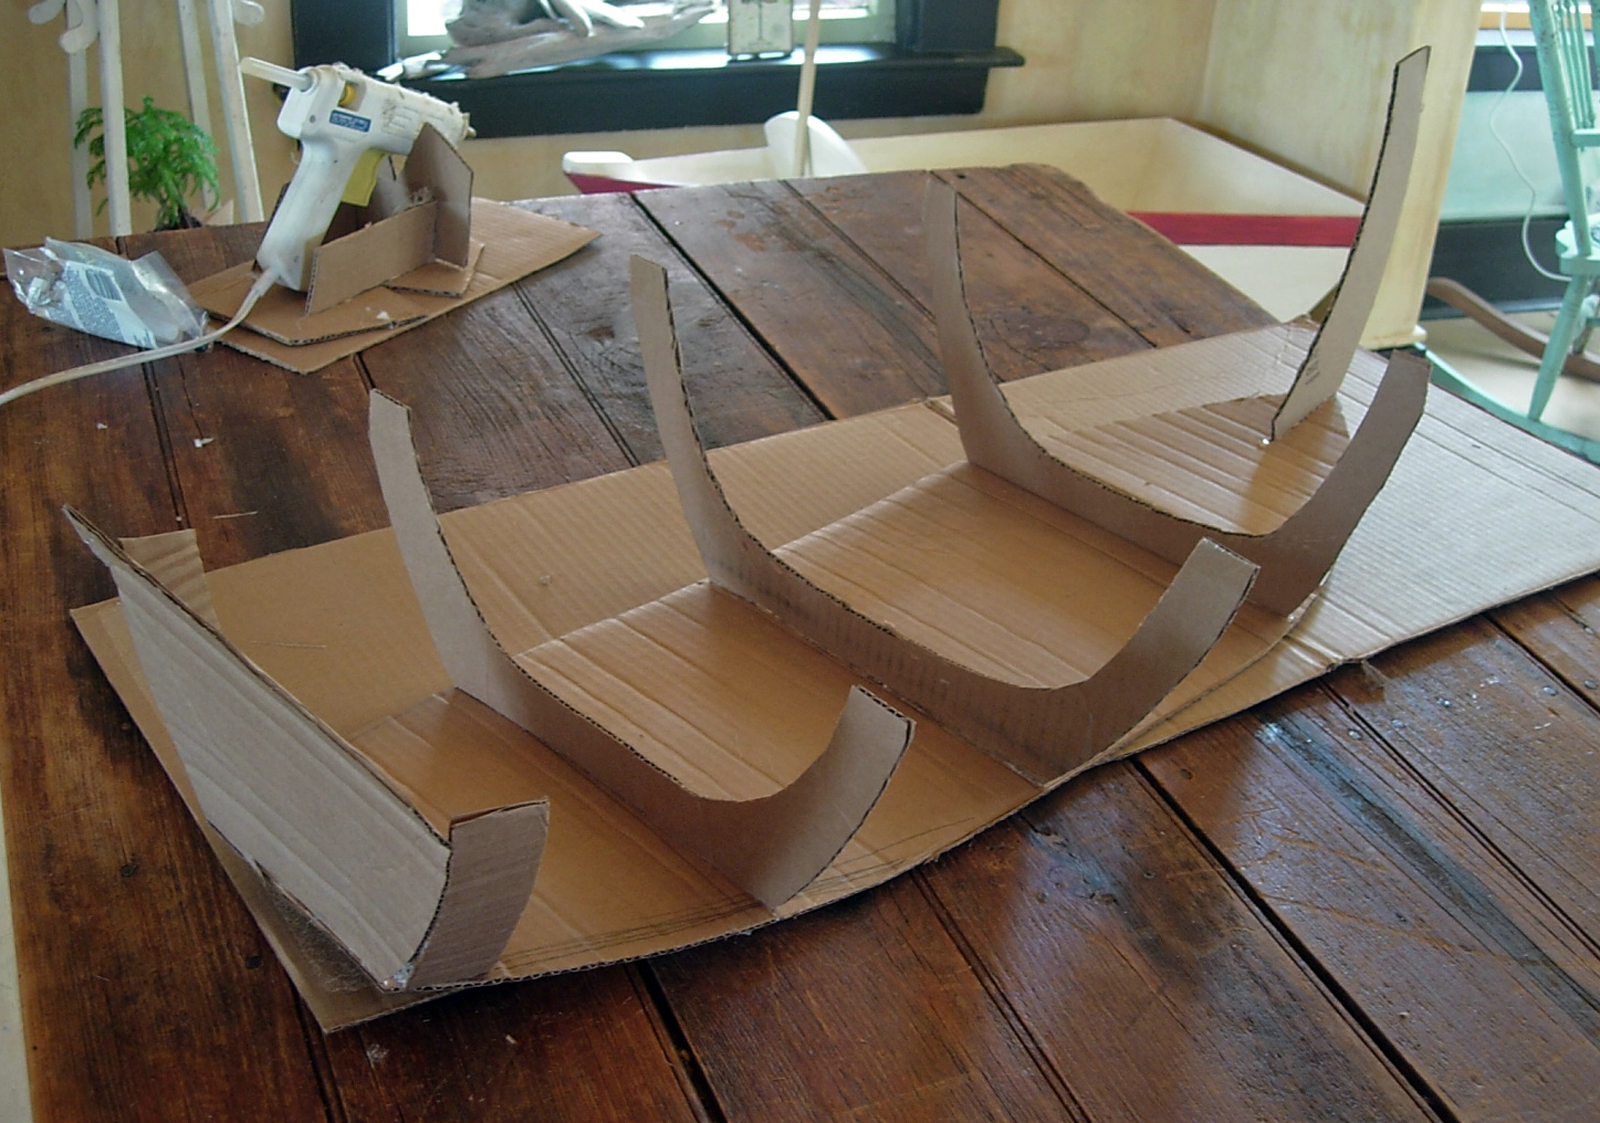 hutch studio: Boat Project Continued